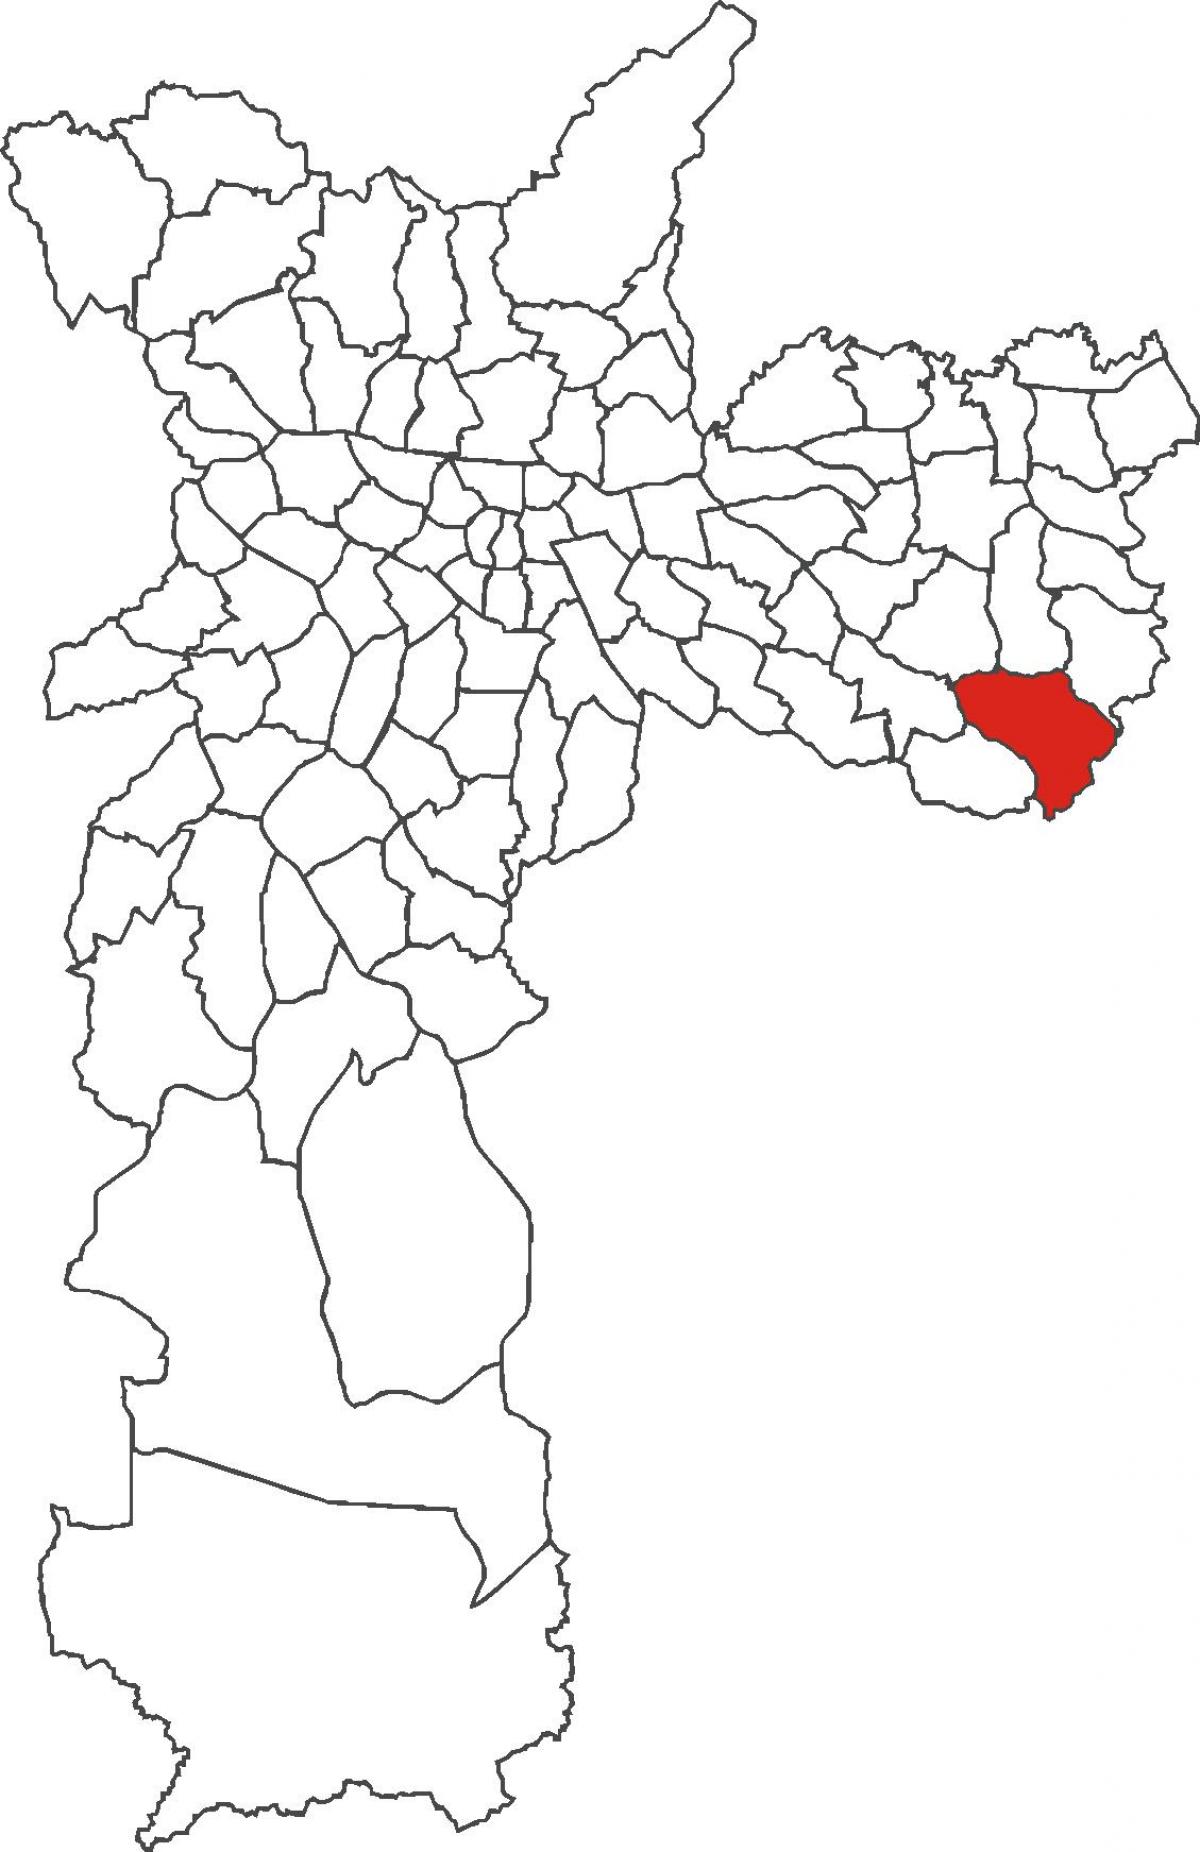 Iguatemi bölge haritası